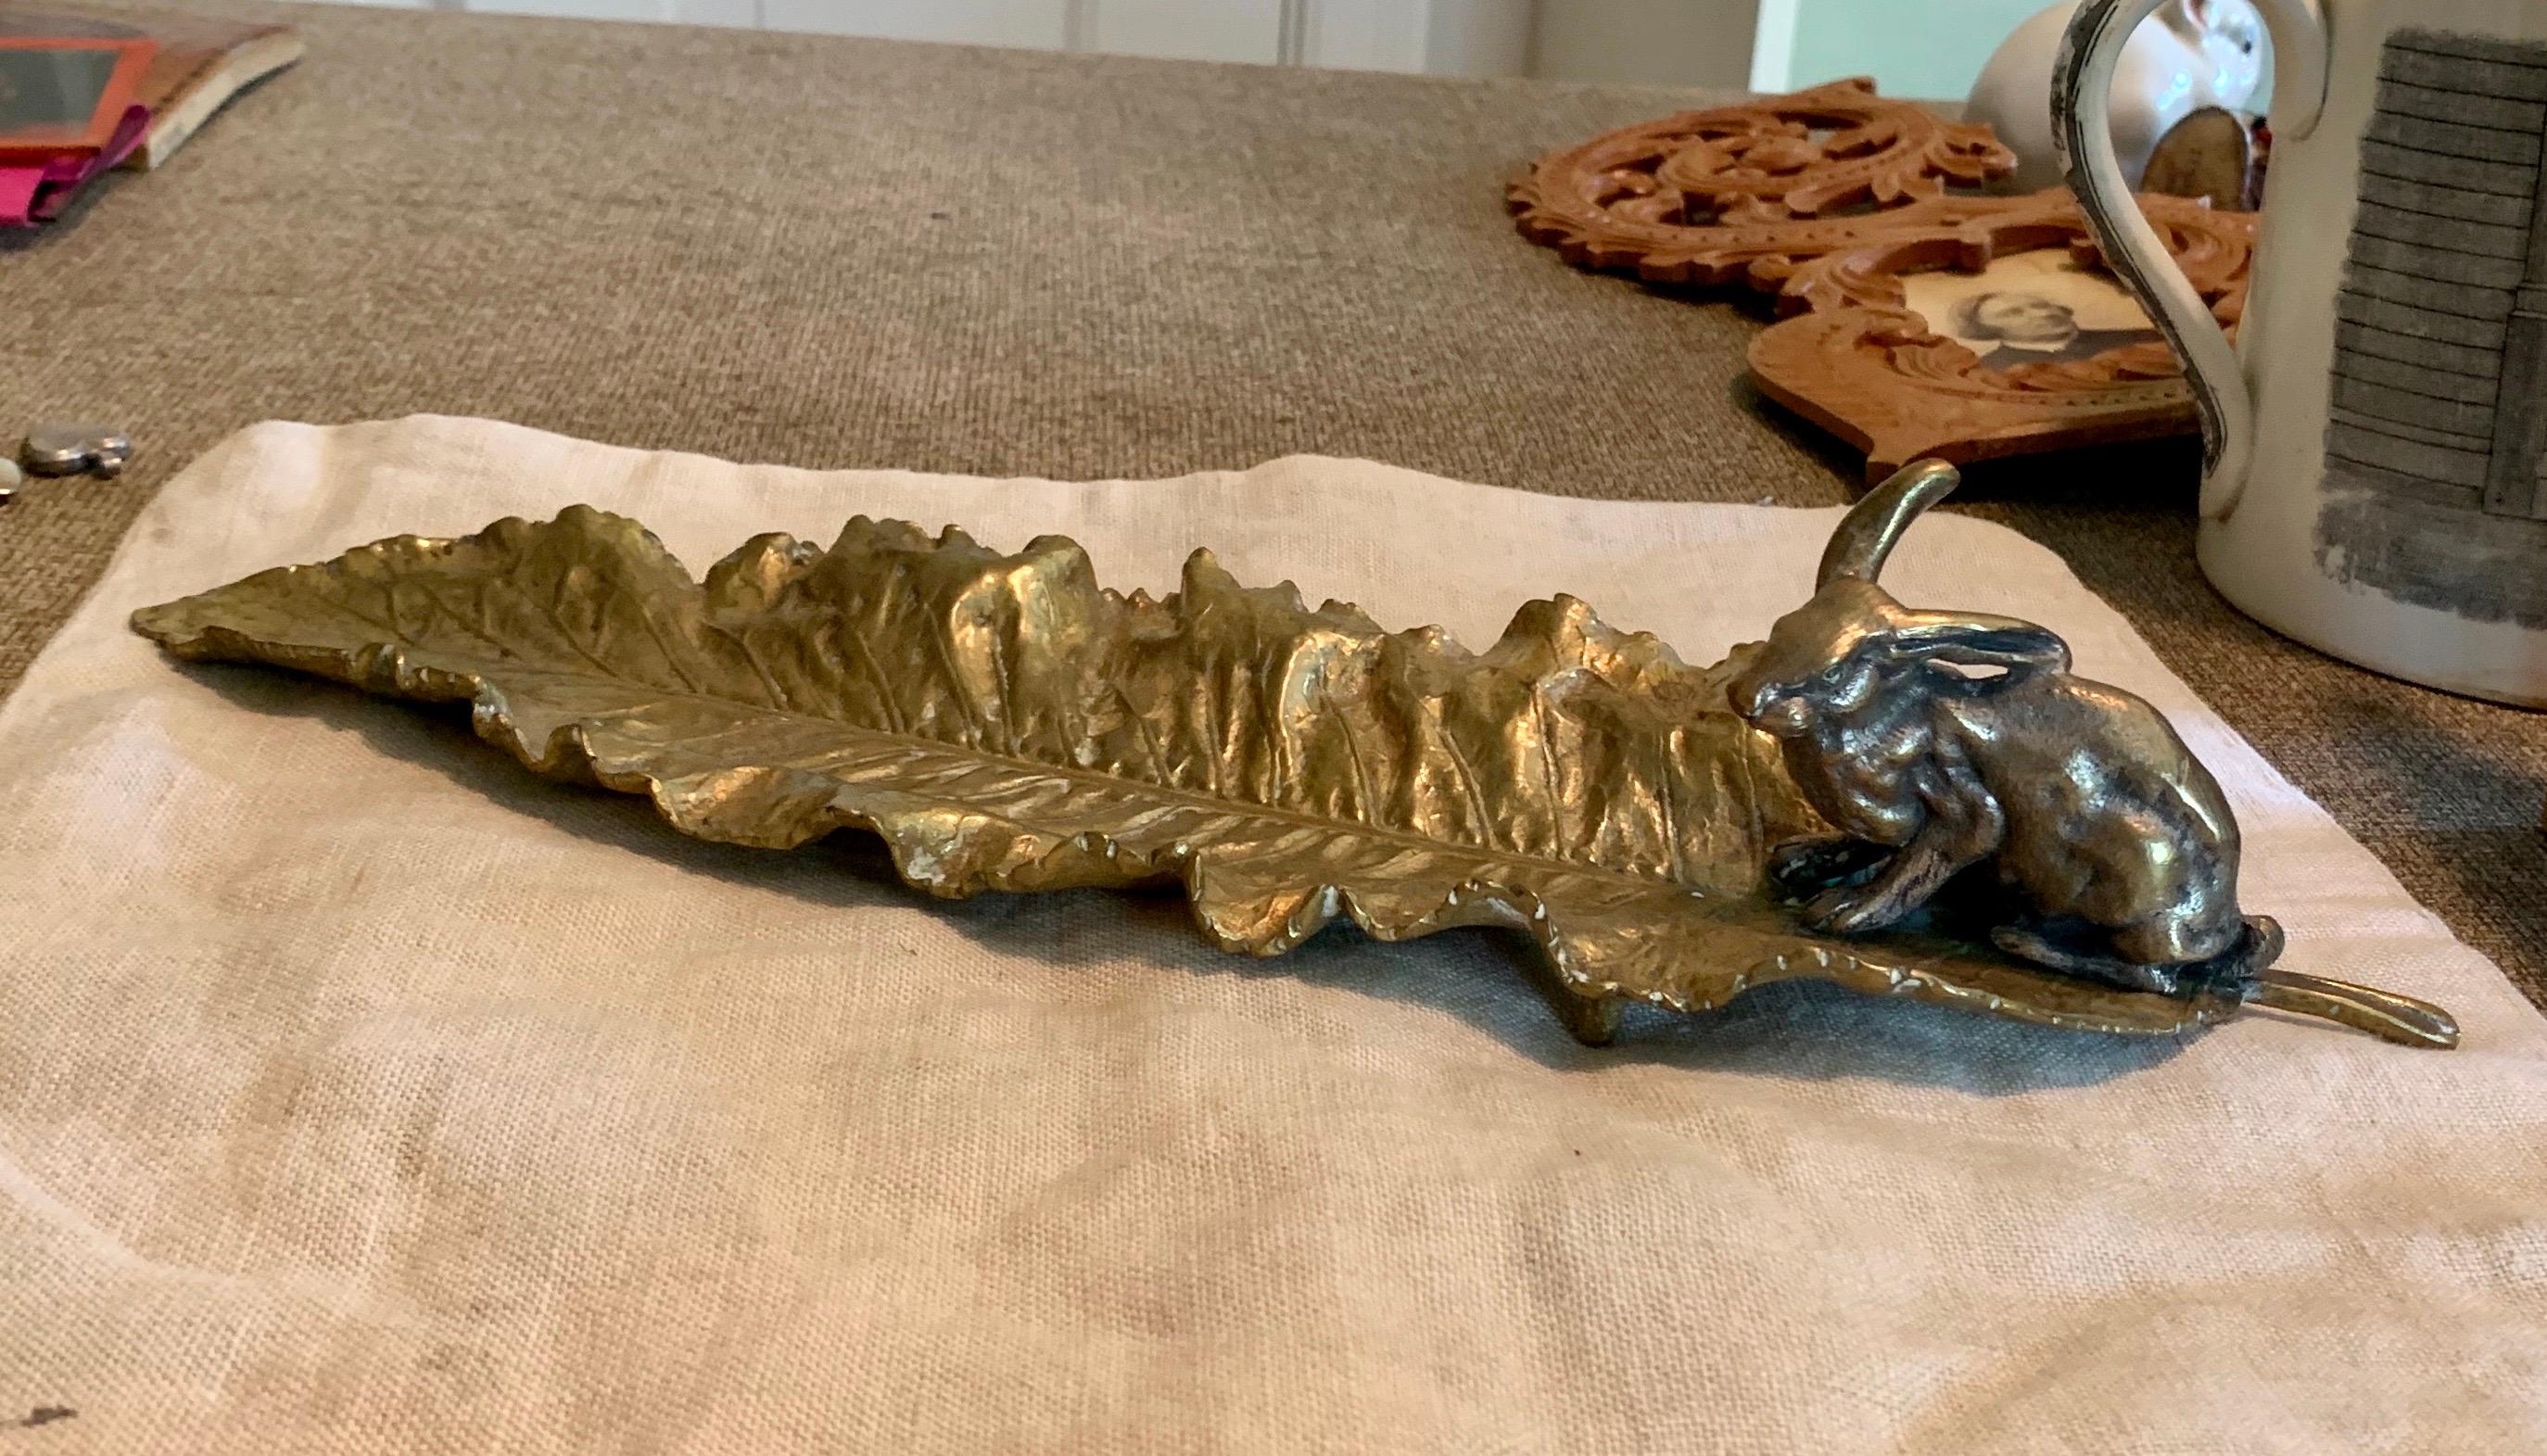 Dies ist eine hervorragende antike Bronze Tablett in Form eines Blattes mit einem Bunny Rabbit.  Die fabelhafte Bronze hat exquisite Details auf dem gesamten Blatt und ein wunderbares Kaninchen an einem Ende. Die Bronze ist höchstwahrscheinlich